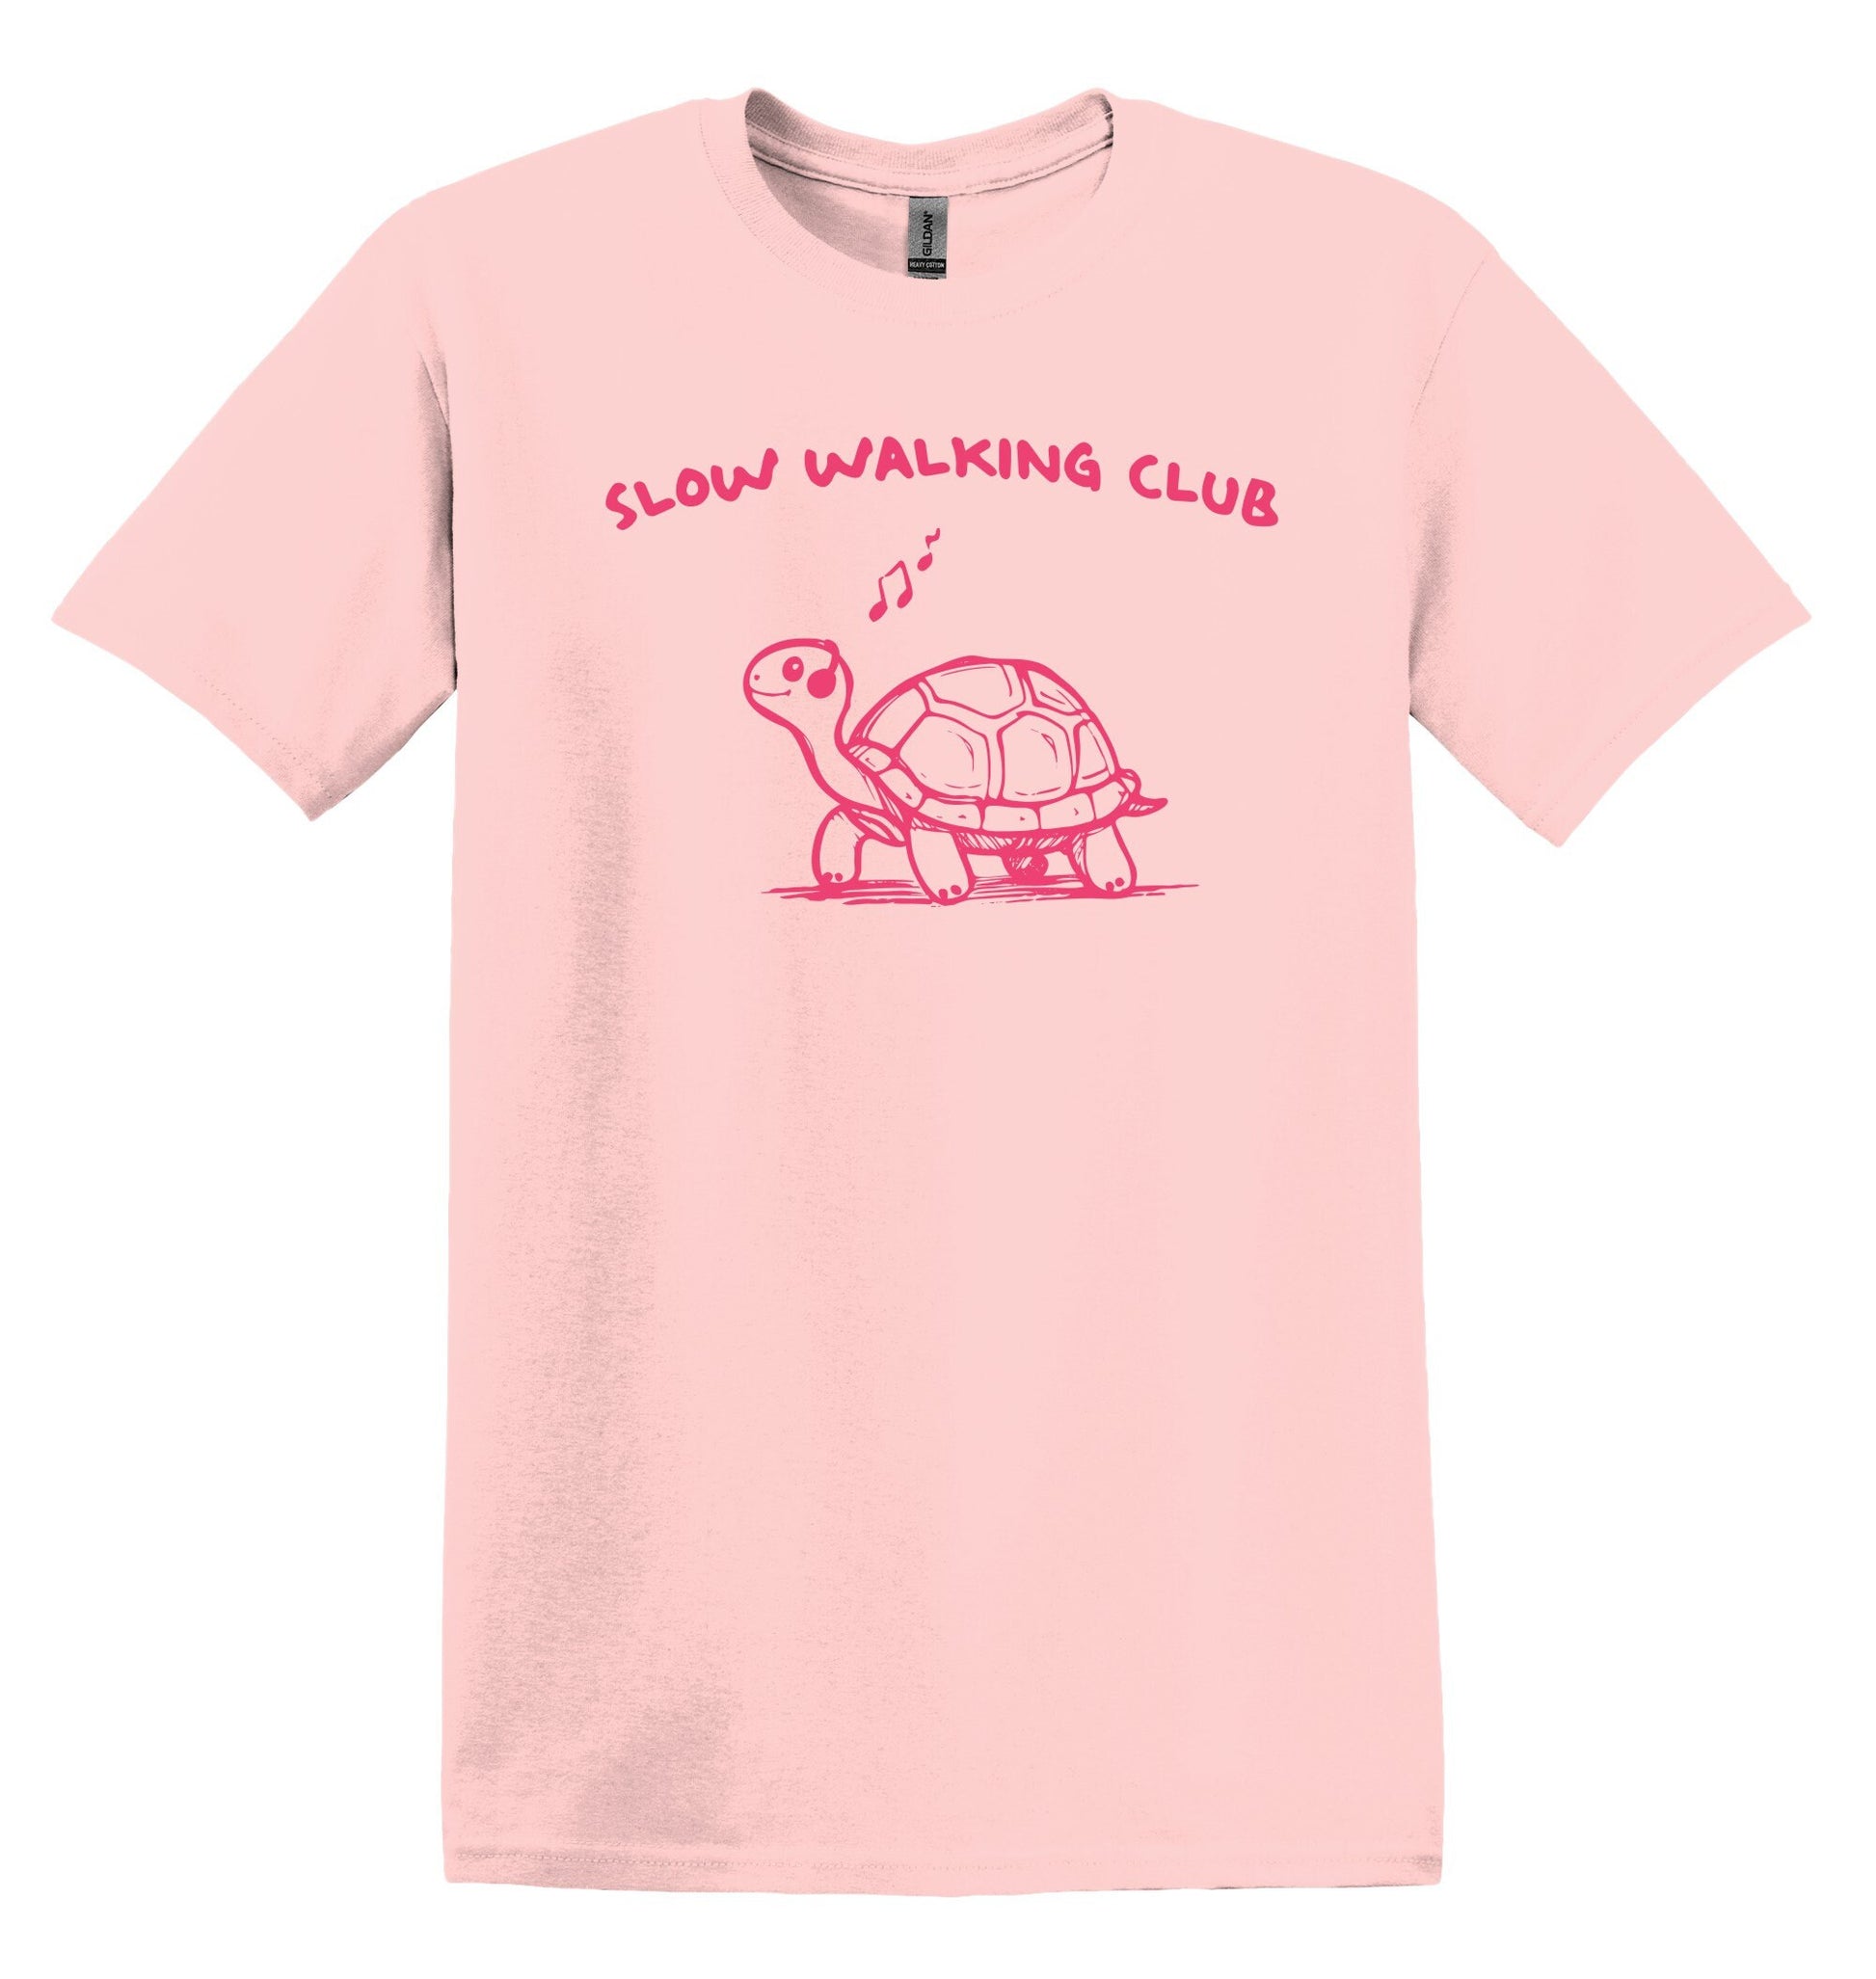 Slow Walking Club T-shirt Graphic Shirt Funny Adult TShirt Vintage Funny TShirt Nostalgia T-Shirt Relaxed Cotton Tee T-Shirt